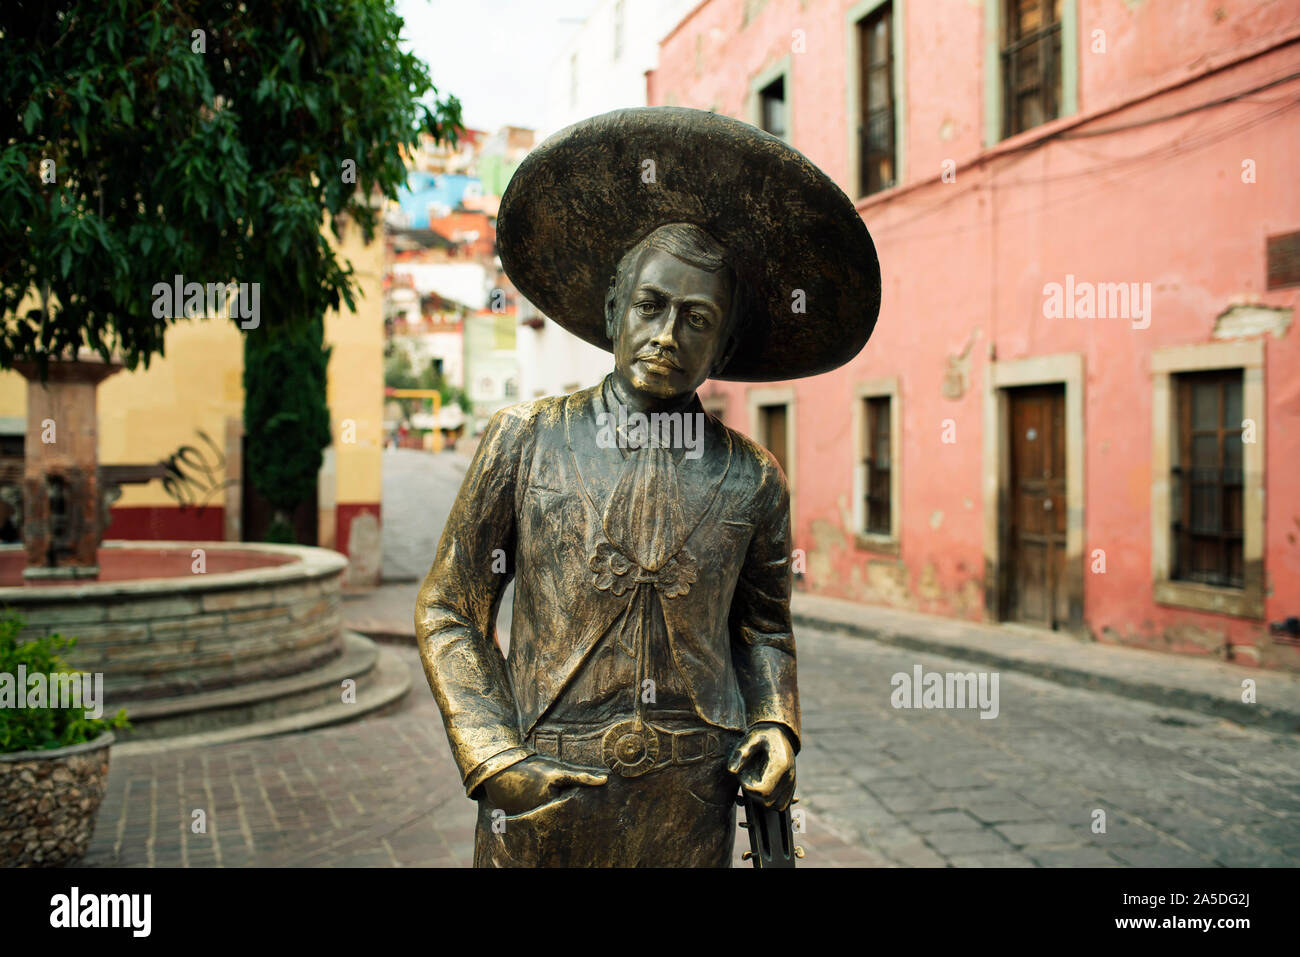 Escultura de bronce de Jorge Negrete, un famoso cantante y actor mexicano de la Edad de Oro del cine mexicano. Guanajuato, México Foto de stock